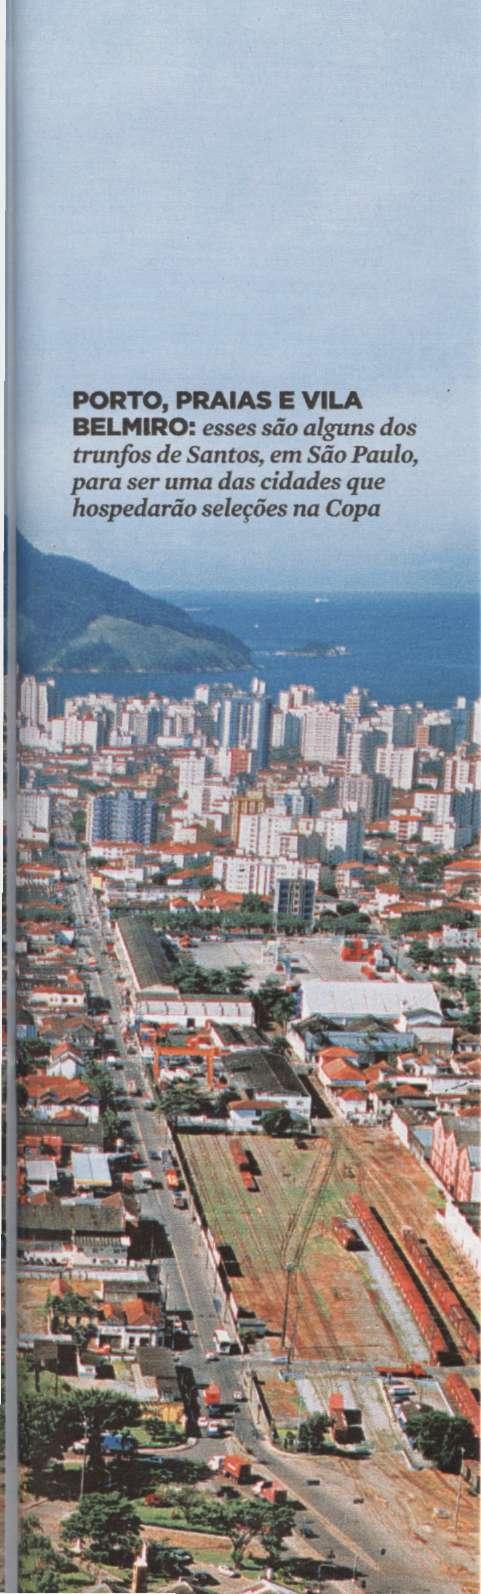 OM INVESTIMENTOS DE BILHÕES DE REAIS para expansão do porto e instalação de bases de apoio à exploração do pré-sal, Santos voltou a ser recentemente uma das mais animadas cidades paulistas.